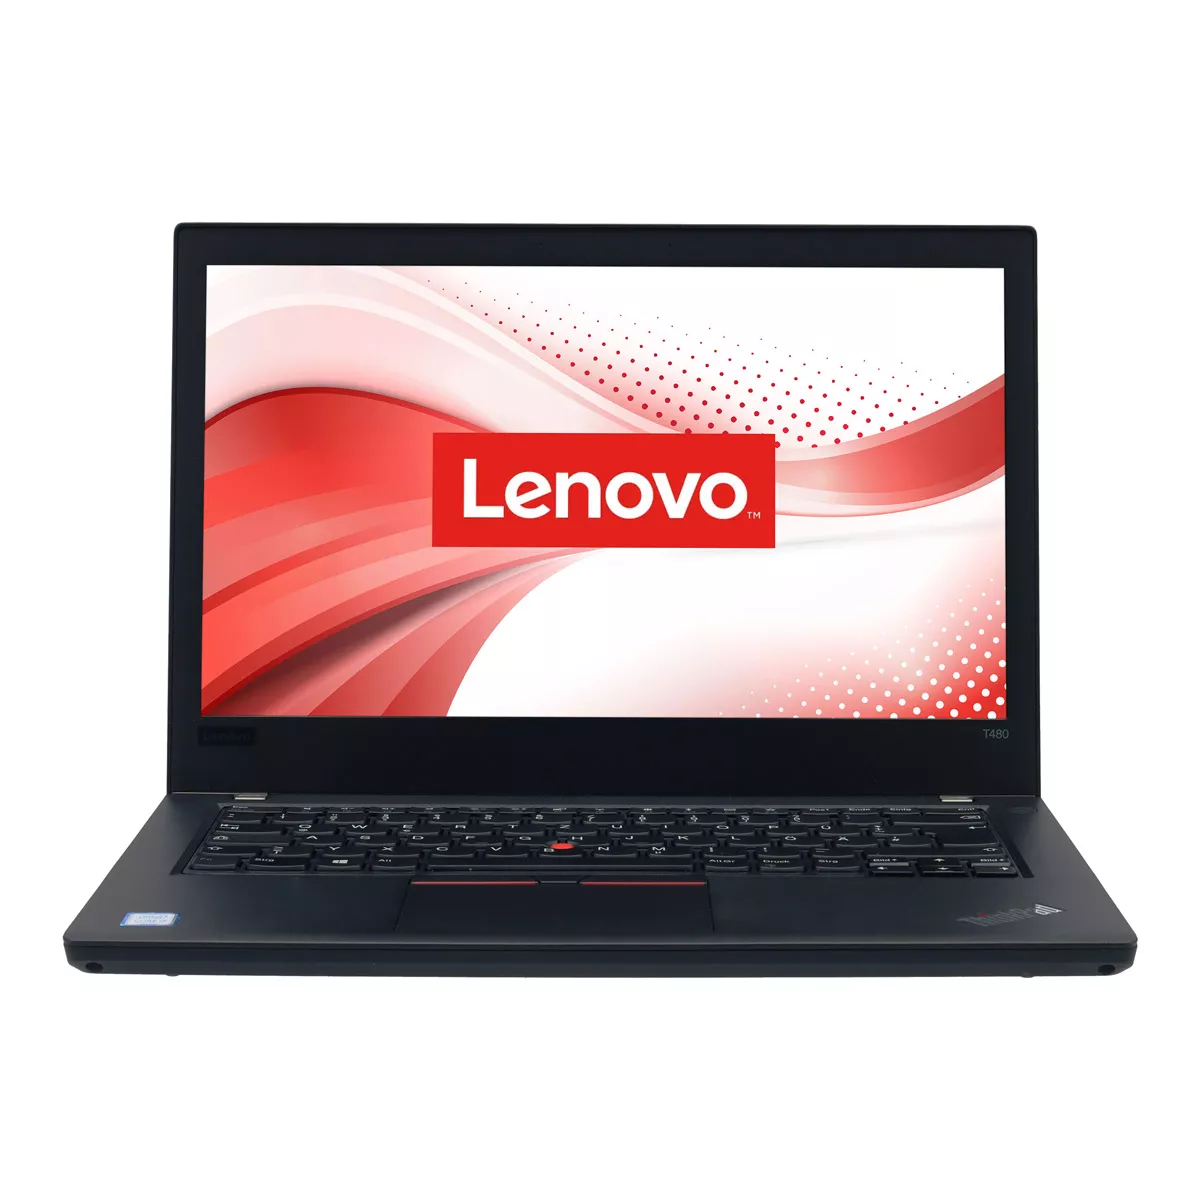 Lenovo ThinkPad T480 Core i5 8250U WQHD 240 GB M.2 SSD Webcam B